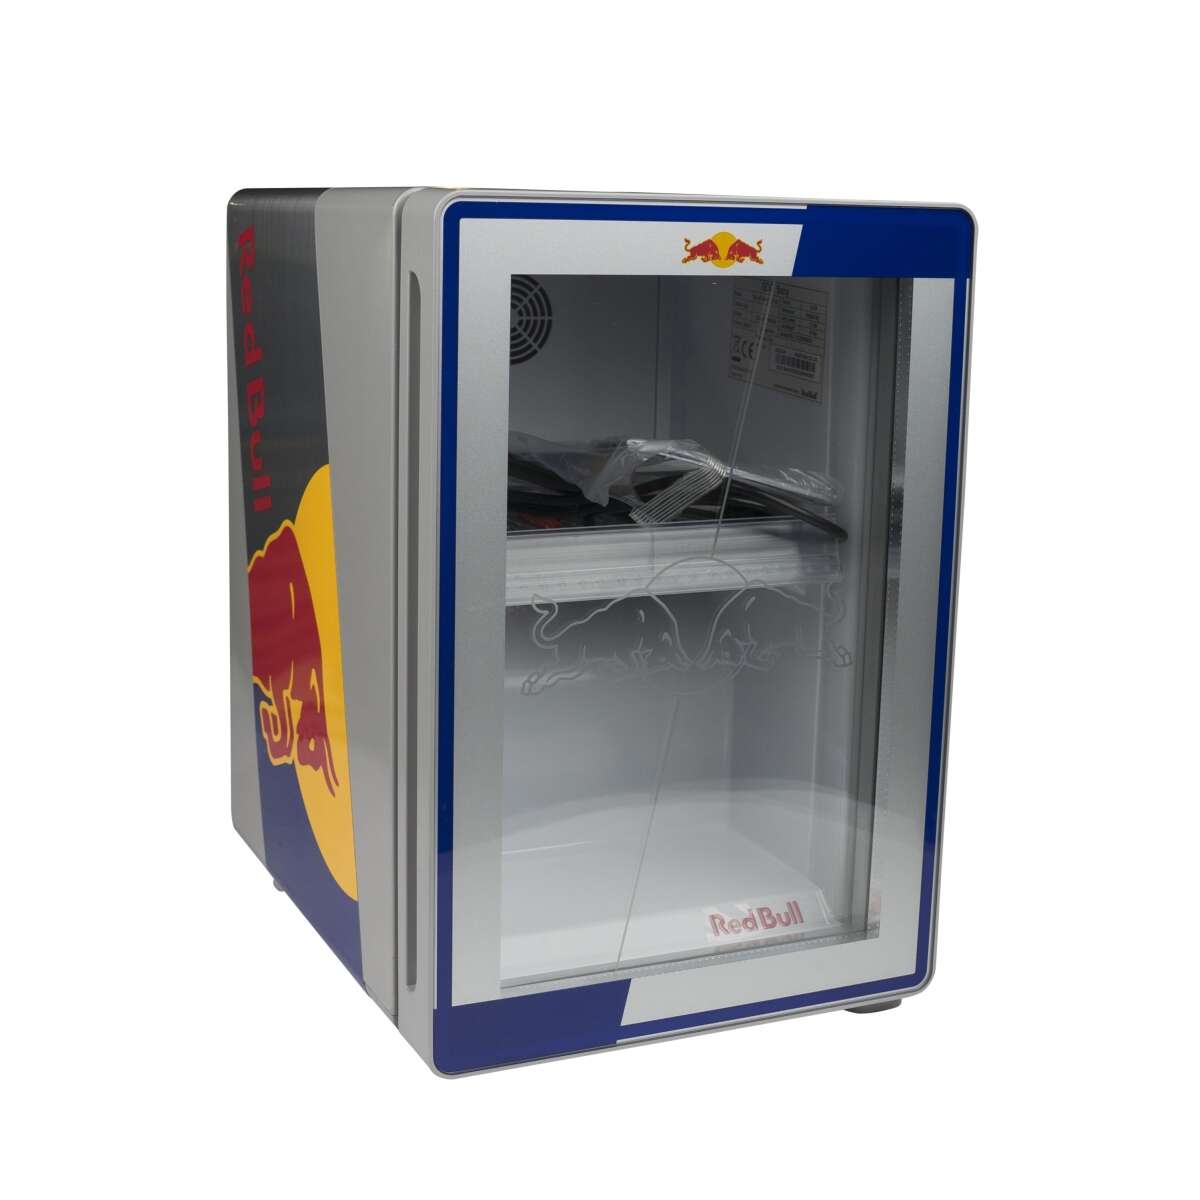 Red Bull mini Kühlschrank